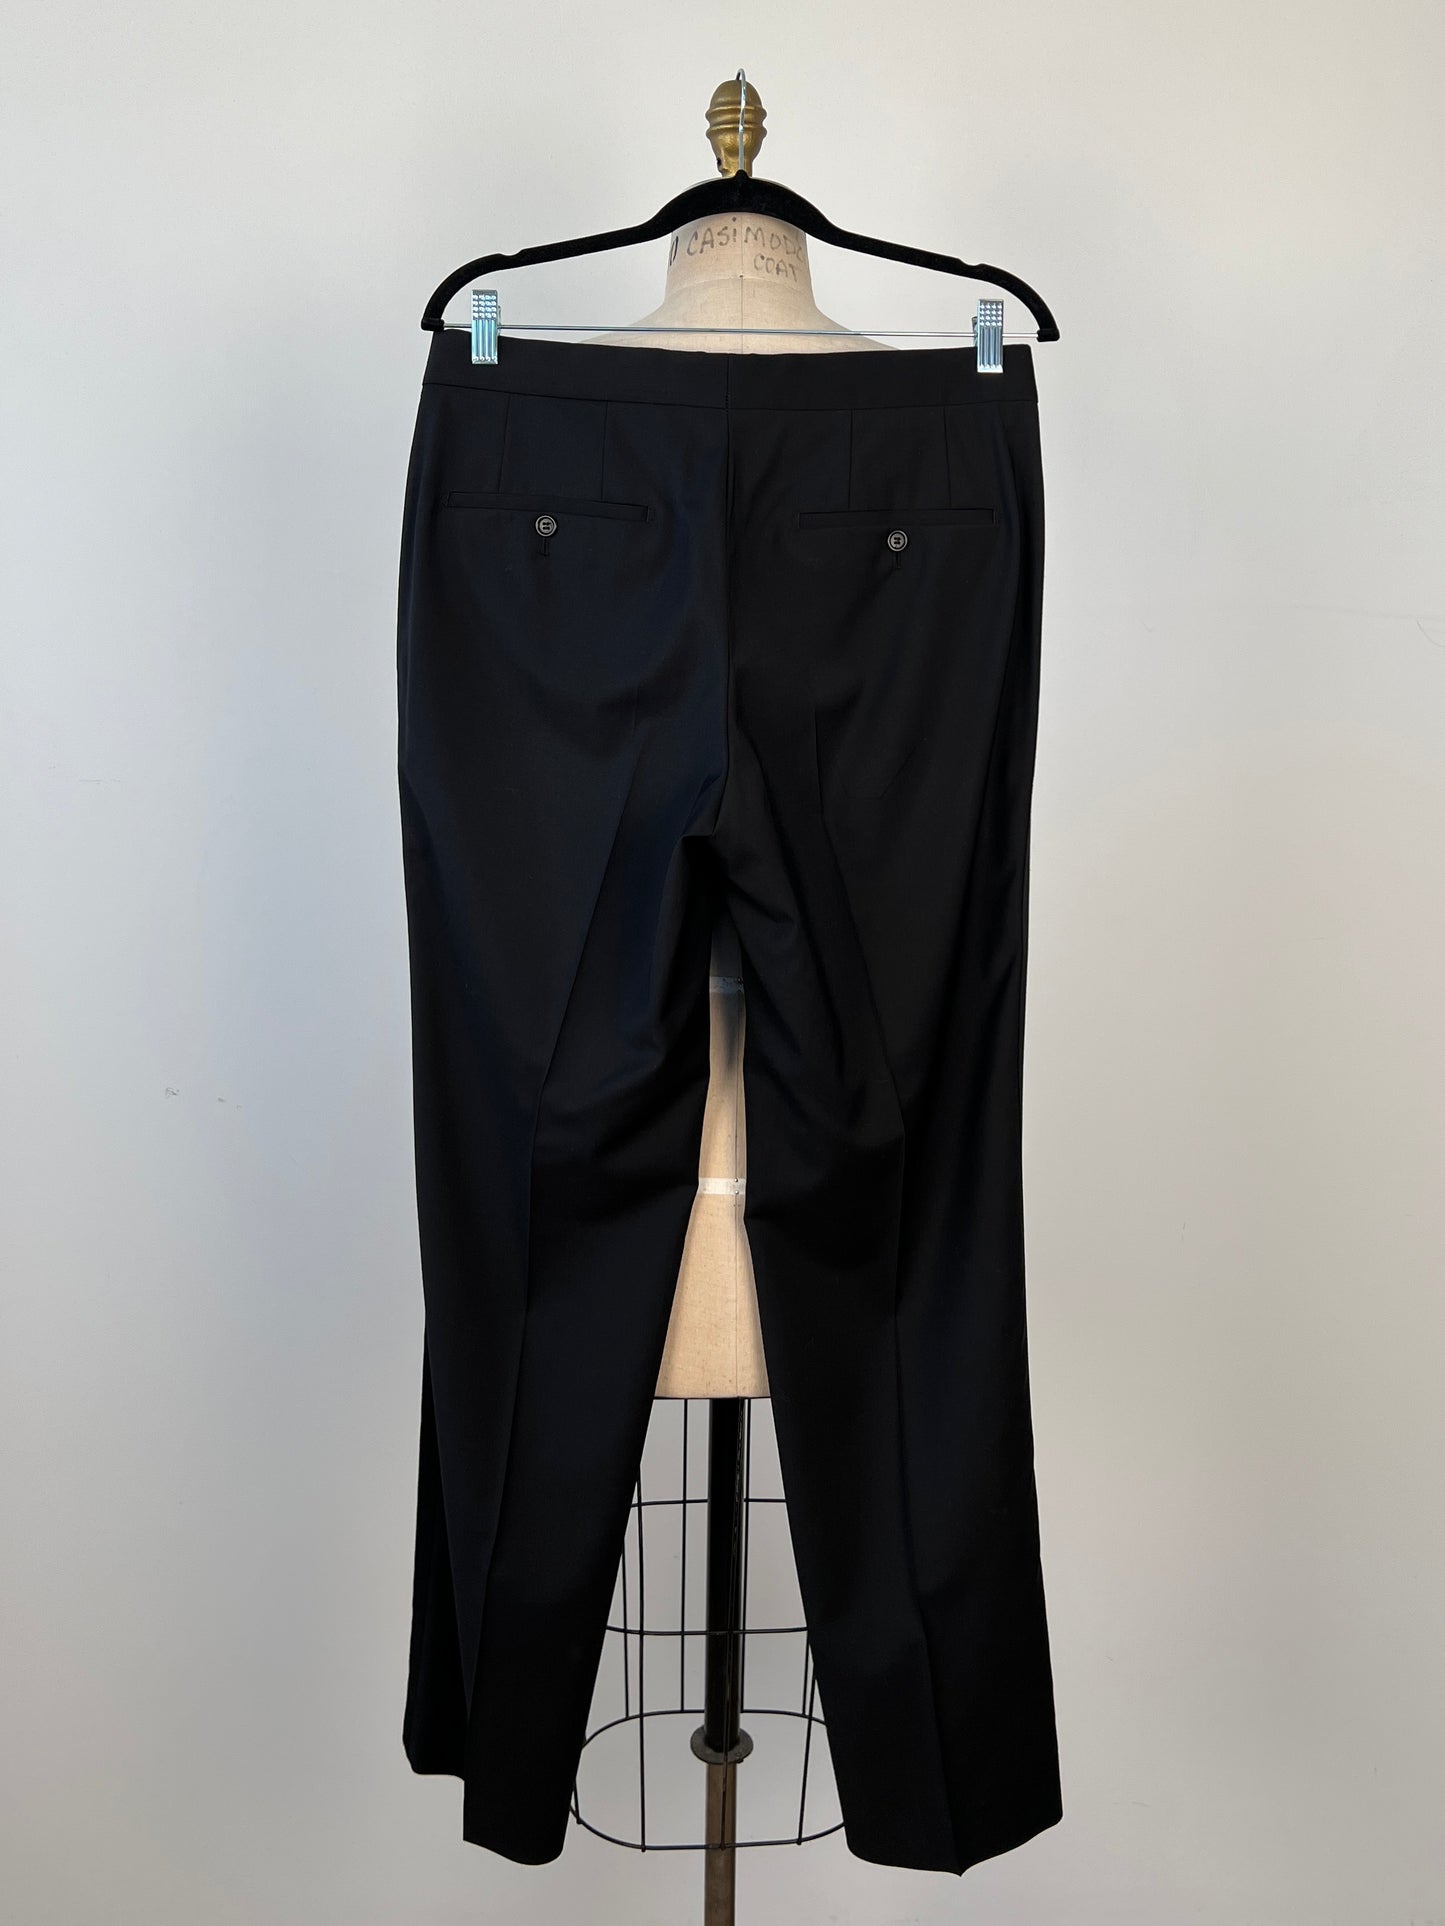 Pantalon tuxedo homme en laine vierge noire (M)